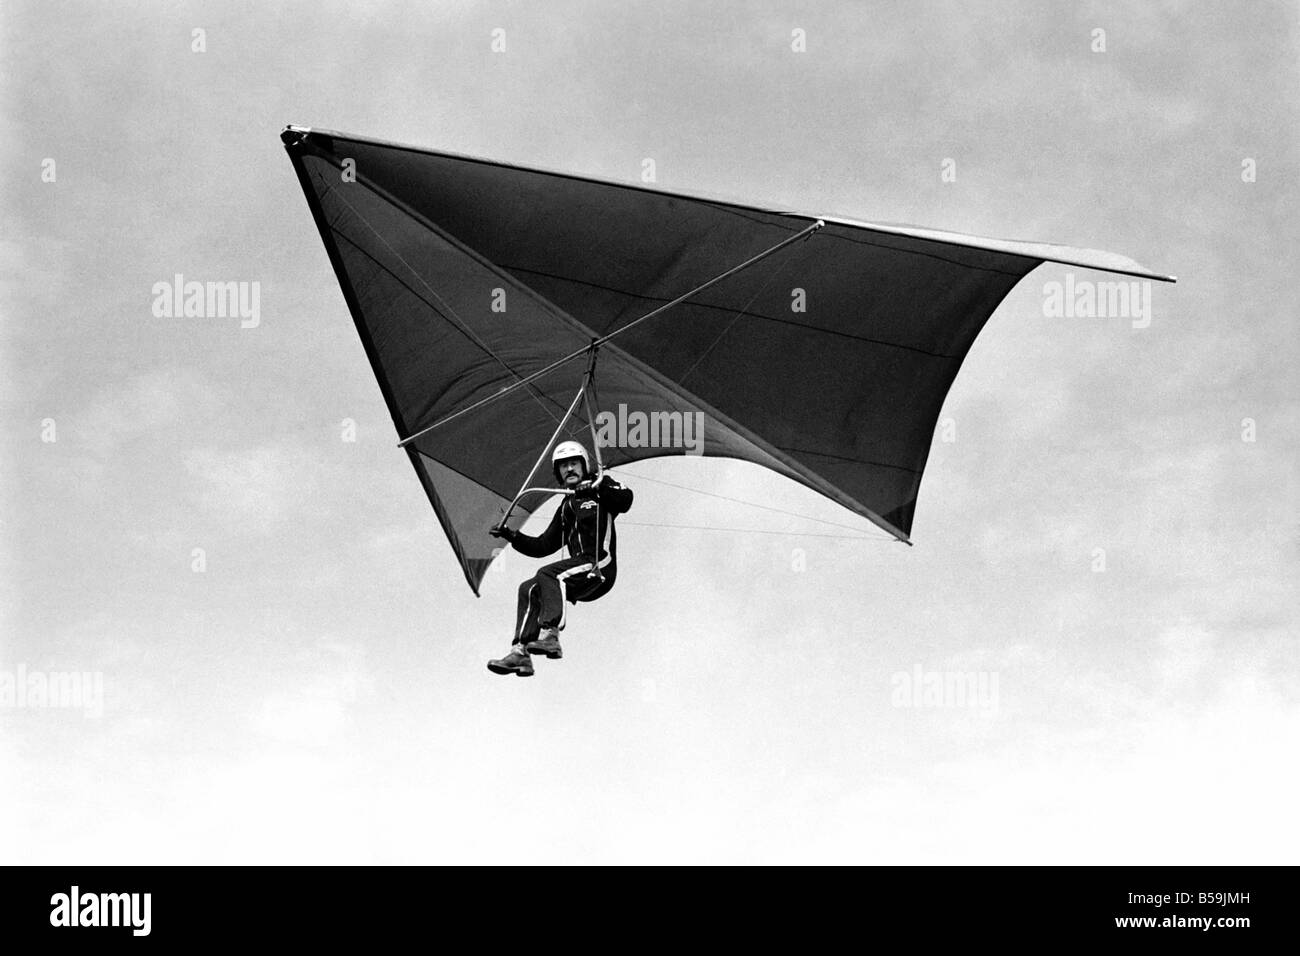 Britische Kite Team. Hang Gliding WM nächste Woche in Australien stattfindet hatten britische Team gesponsert von B.P. Last-Minute-Get-together am Nachmittag (Freitag) in Marlborough Downs, Wiltshire. März 1975 75-01306-006 Stockfoto